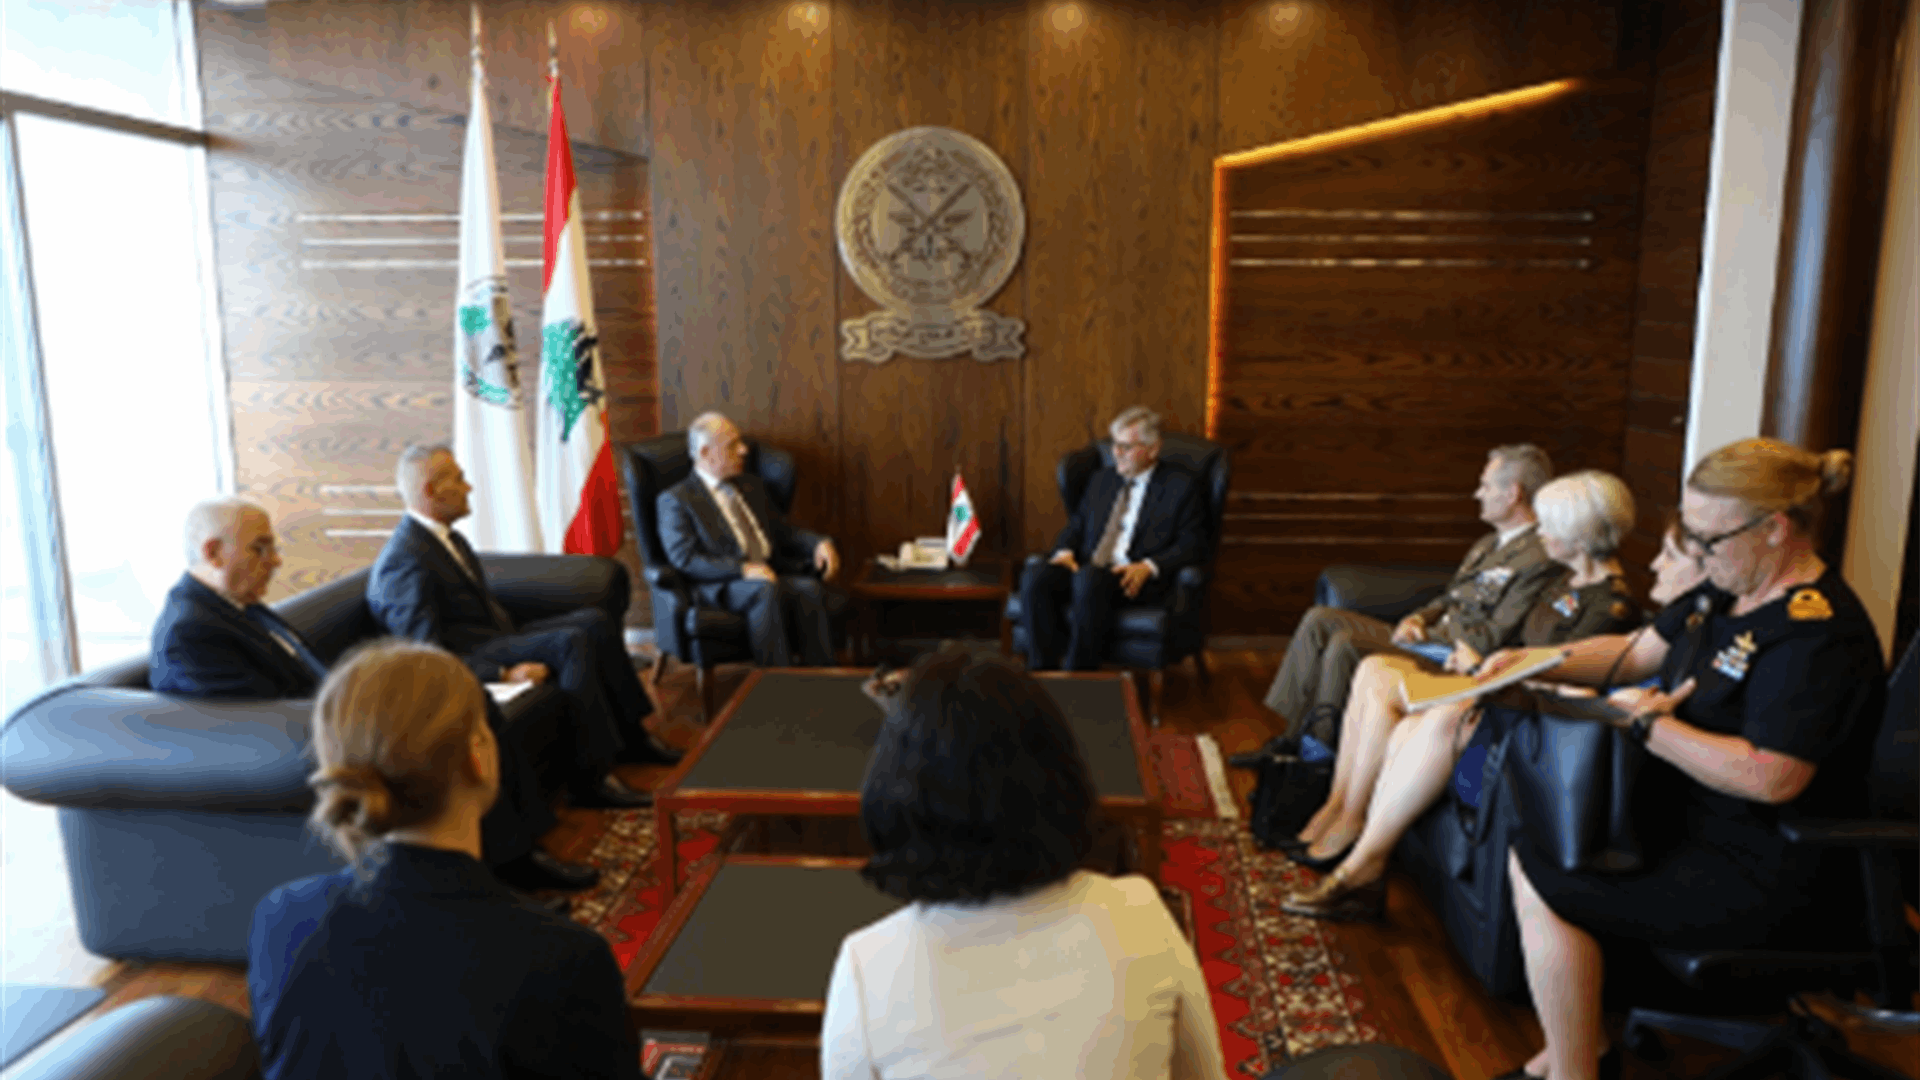  سليم التقى لاكروا: لبنان متمسك بالقرار 1701 